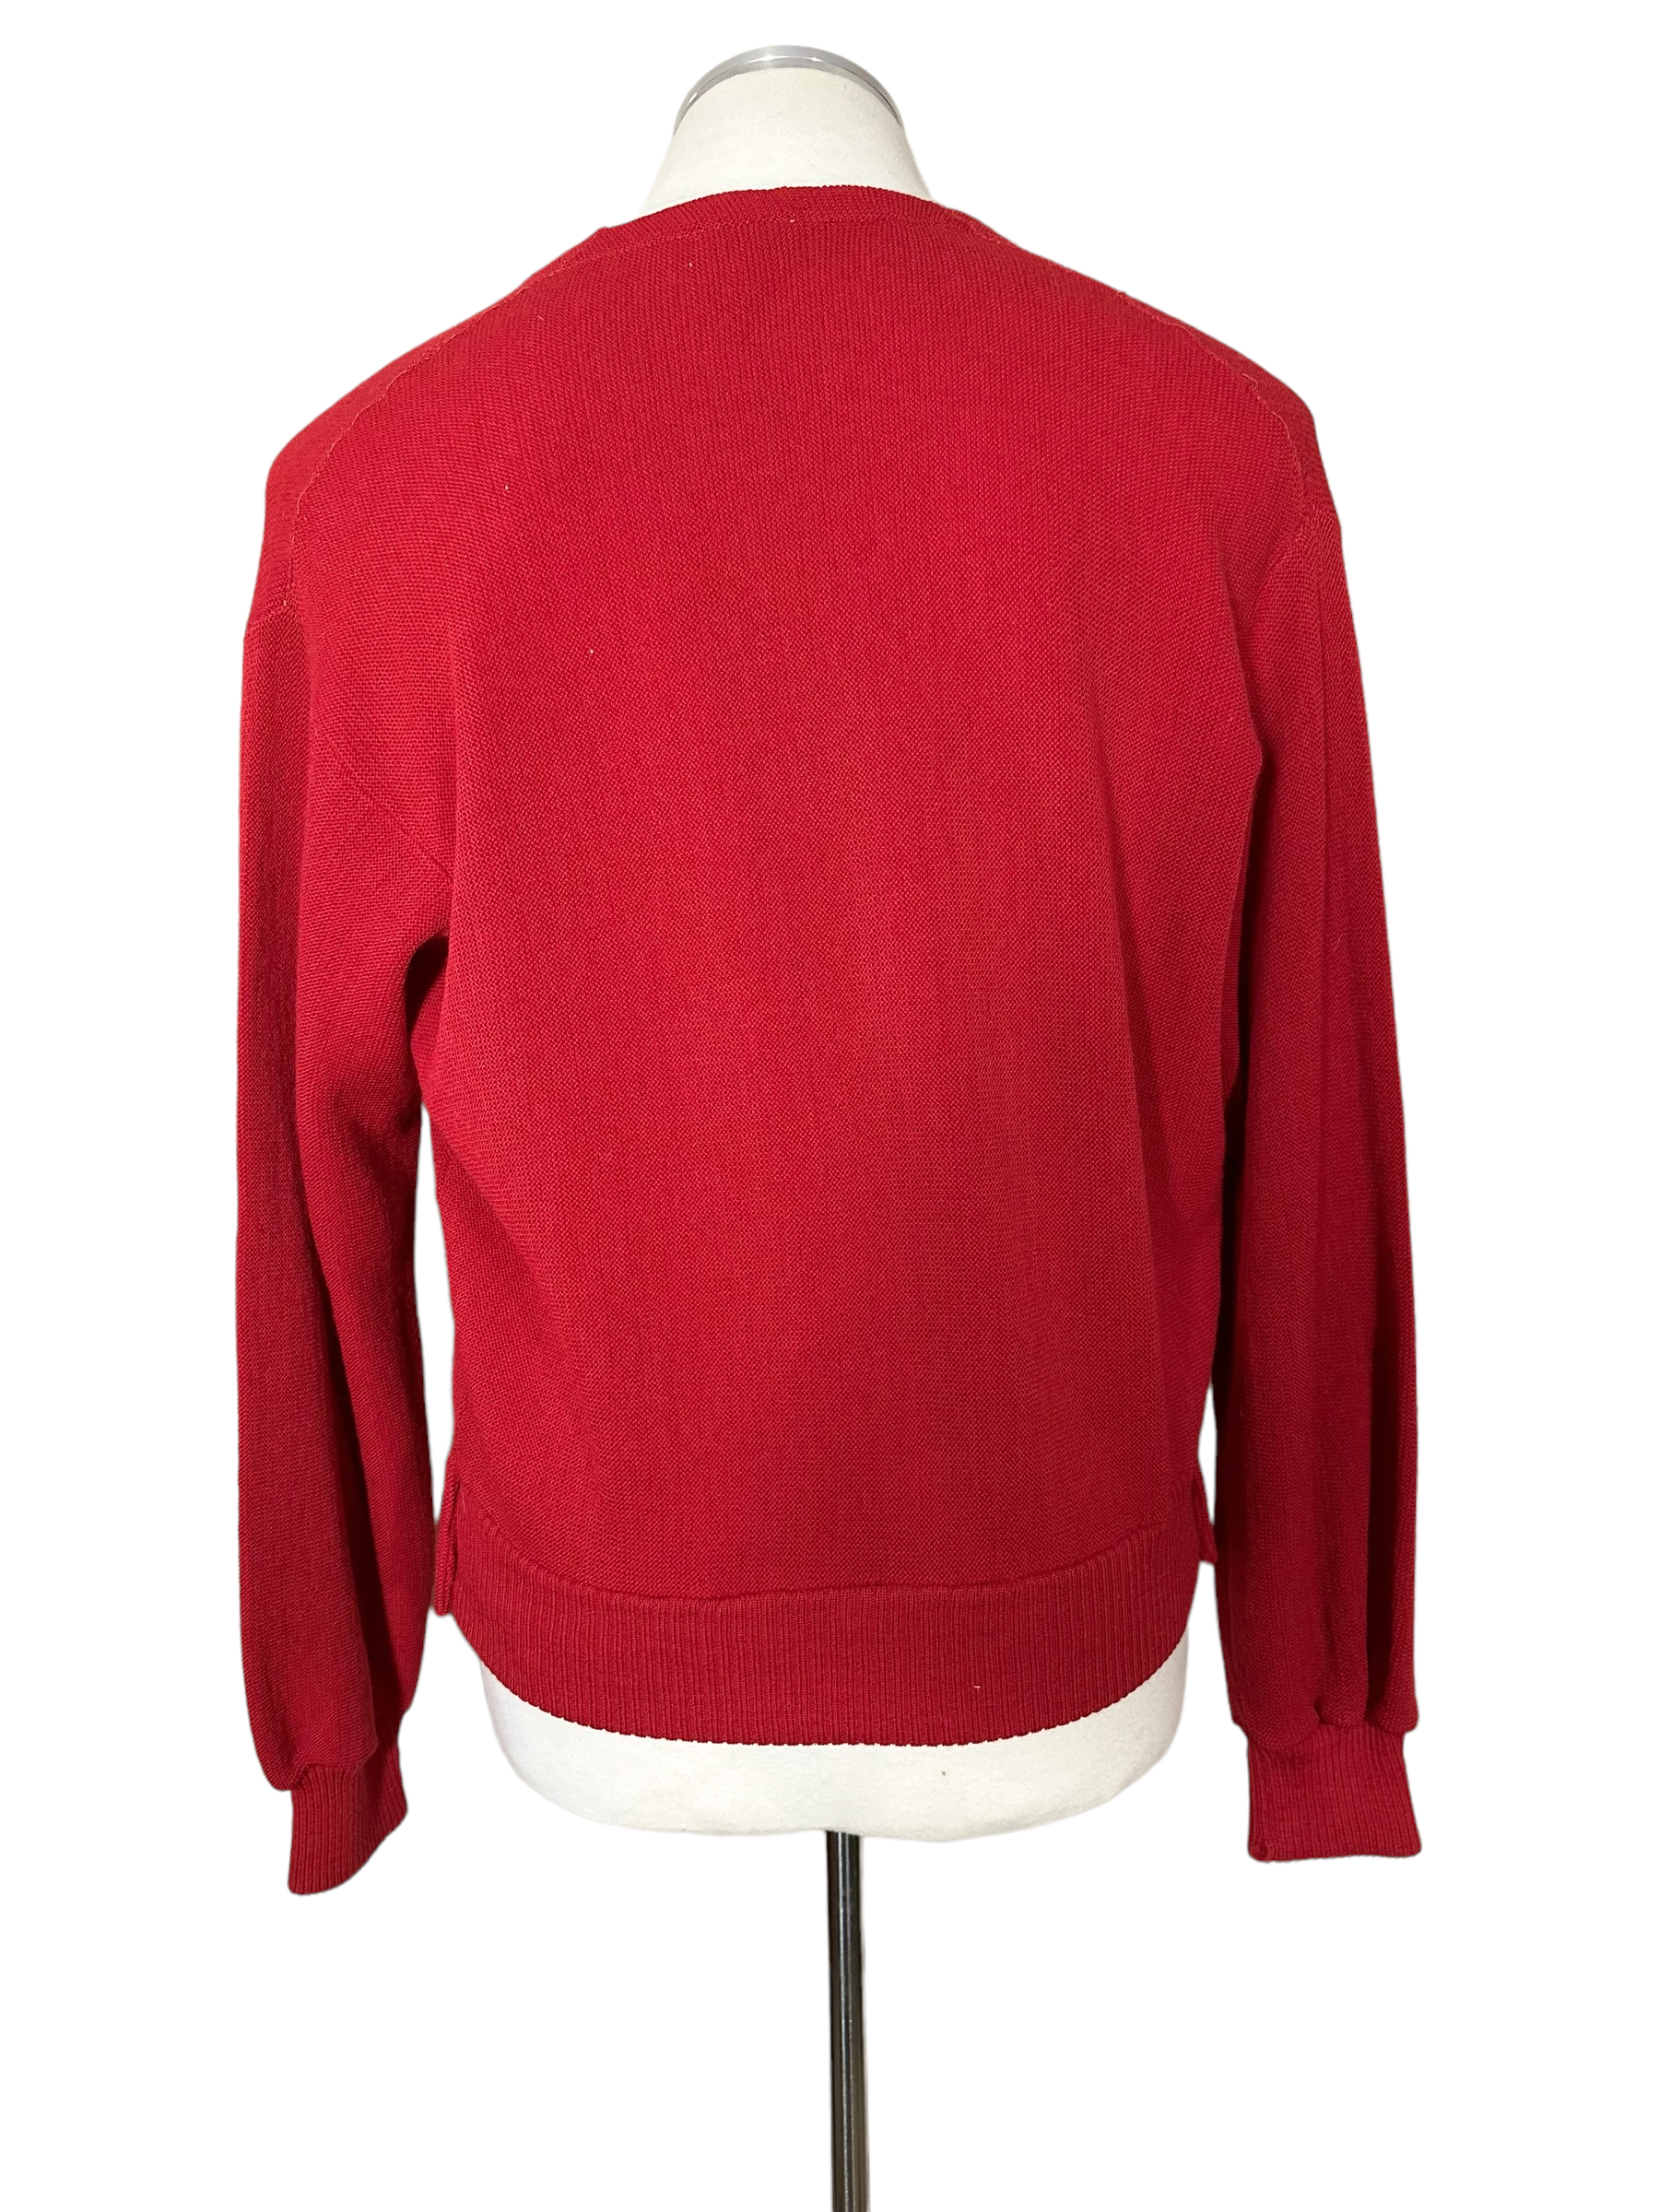 Rear View of Vintage Hastings Red Wool Cardigan | Barn Owl Vintage Clothing Seattle